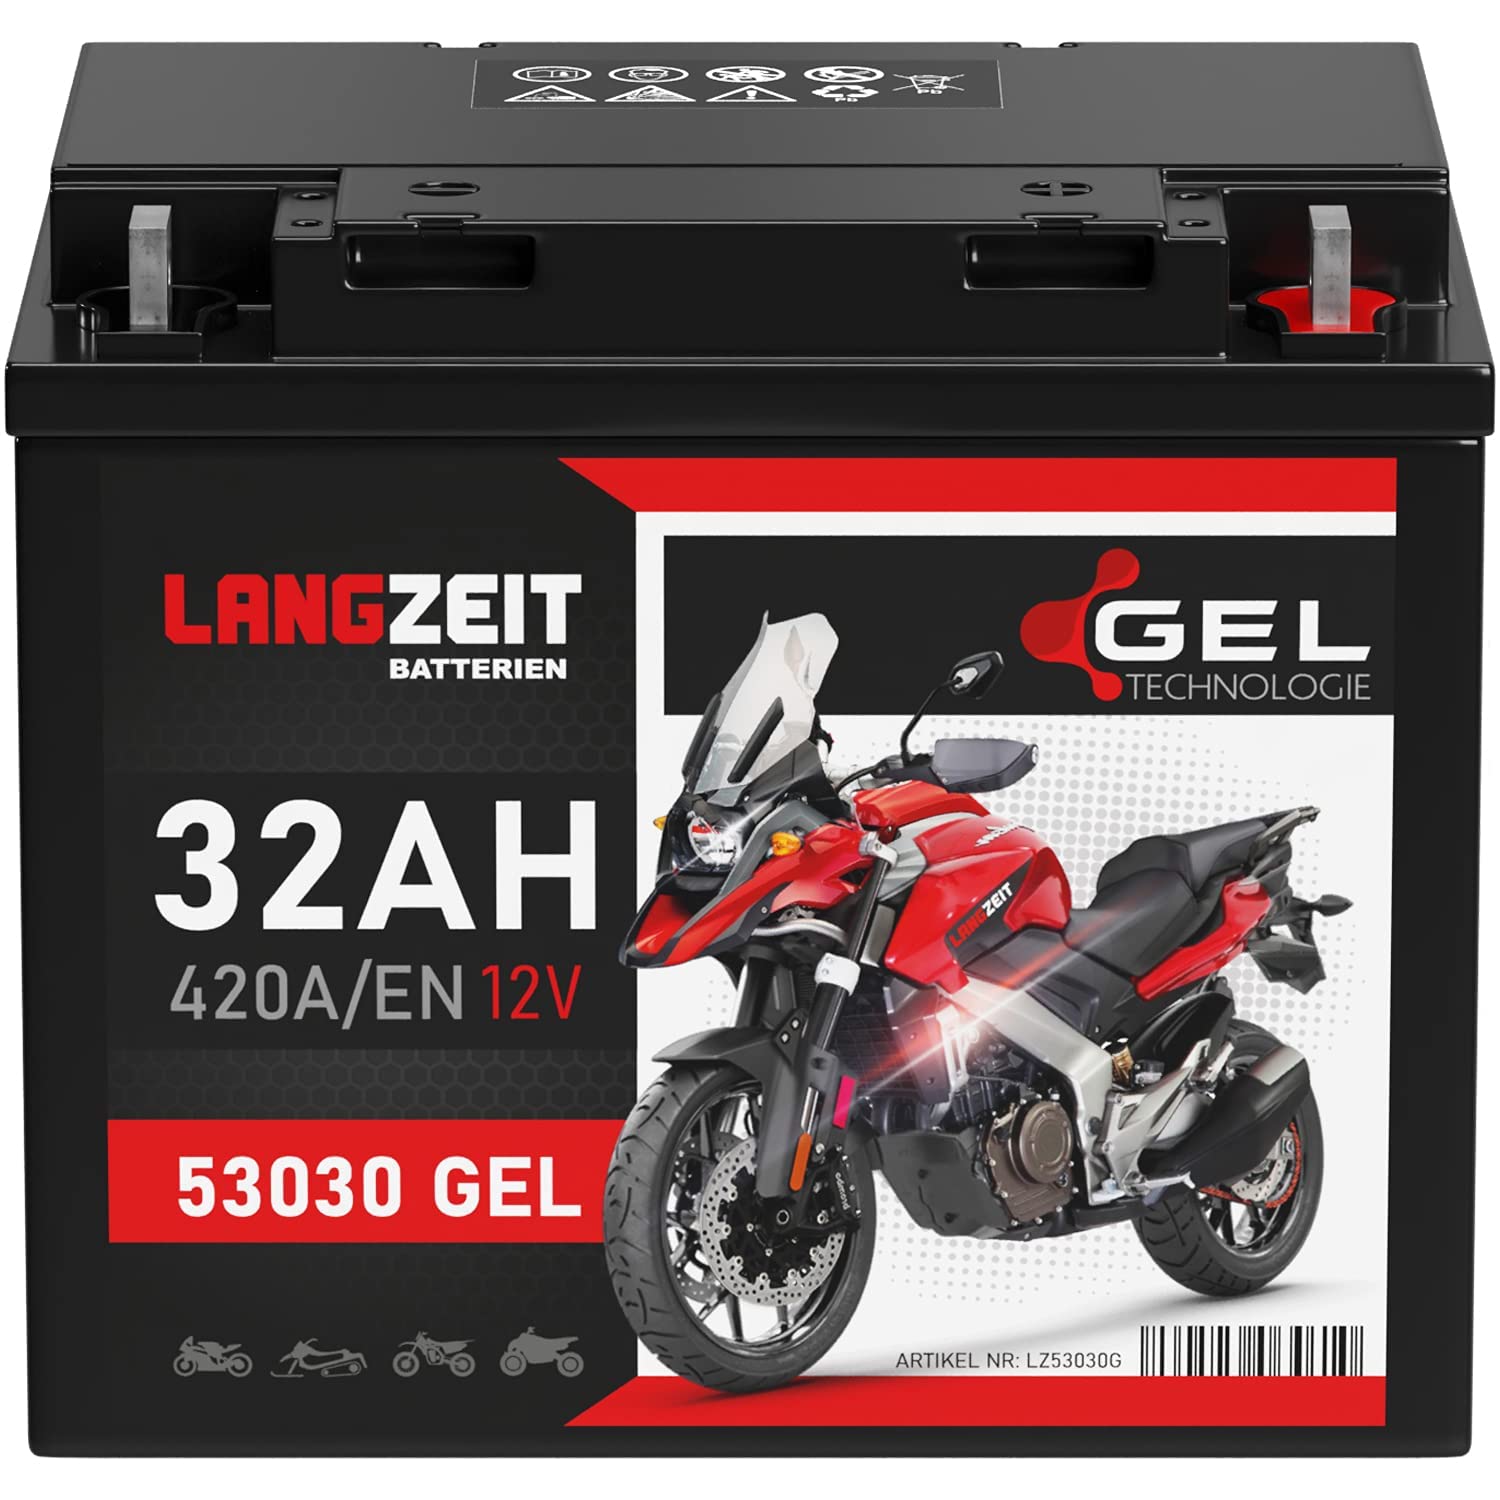 LANGZEIT Y60-N30L-A GEL Motorradbatterie 12V 32Ah 420A/EN GEL Batterie 12V 53030 doppelte Lebensdauer vorgeladen auslaufsicher wartungsfrei statt 28Ah 30Ah von LANGZEIT Batterien